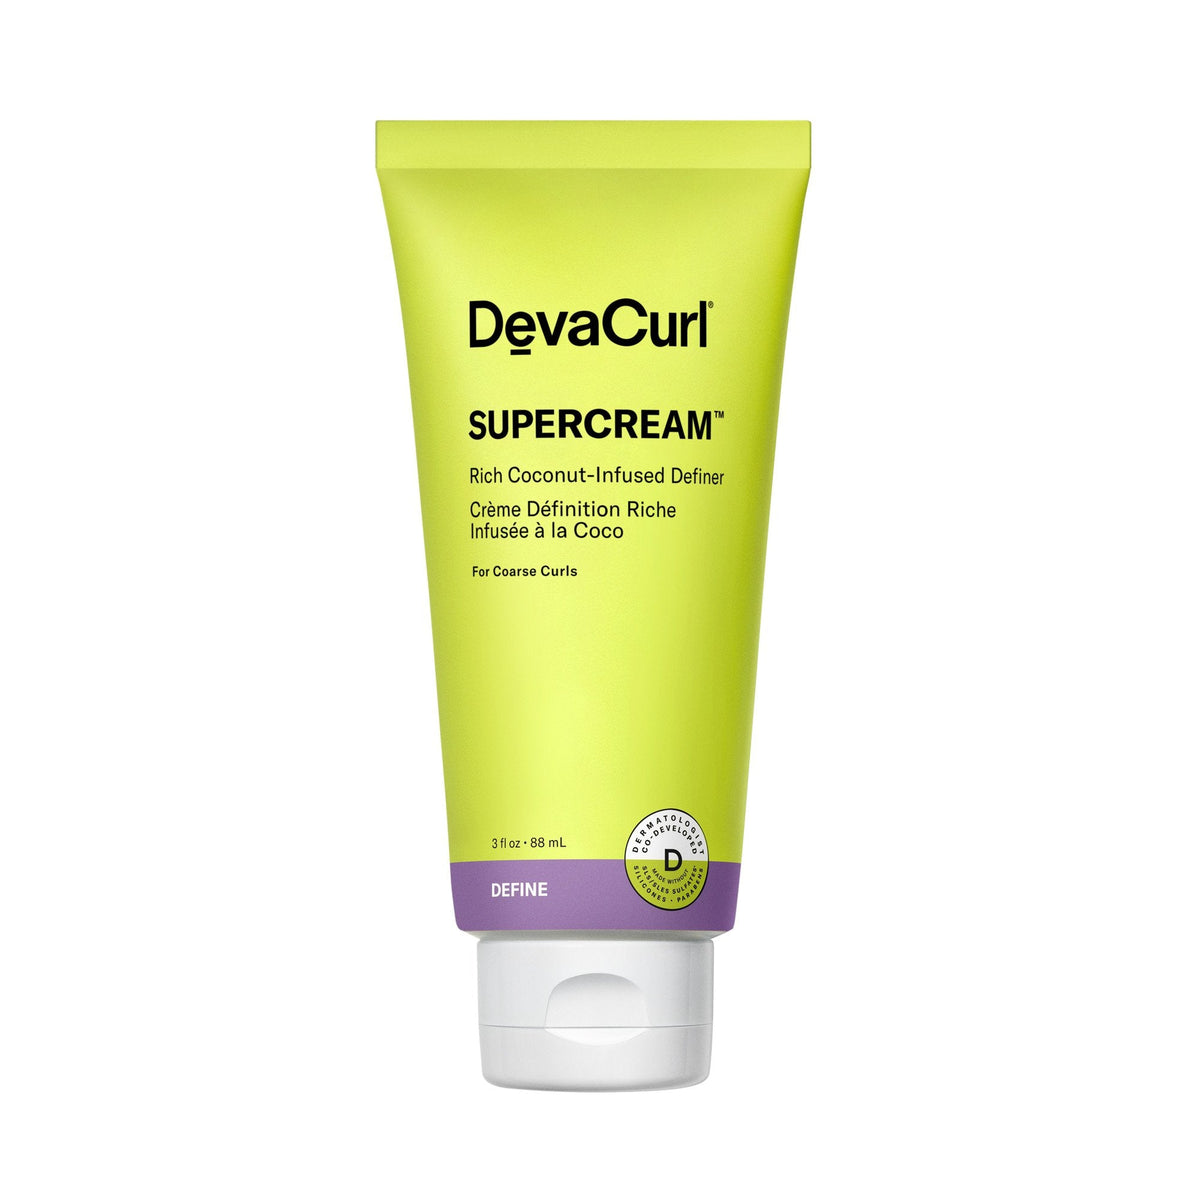 New! DevaCurl SuperCream - 3oz - by Deva Curl |ProCare Outlet|